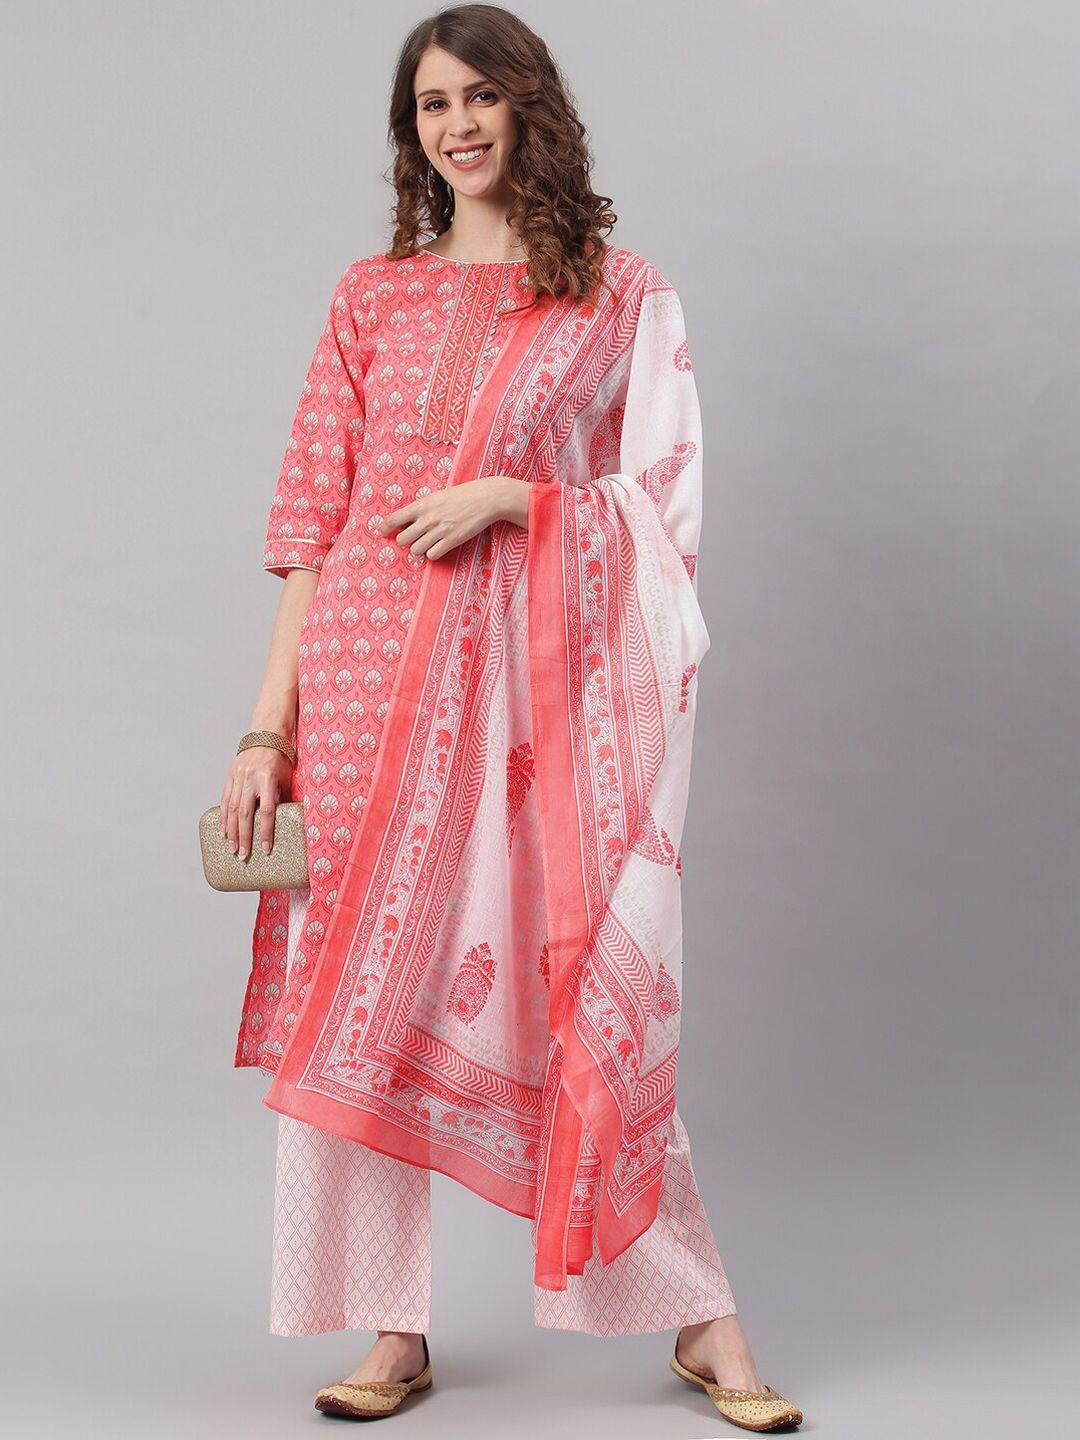 janasya women pink ethnic motifs printed pleated pure cotton kurta with palazzos & dupatta